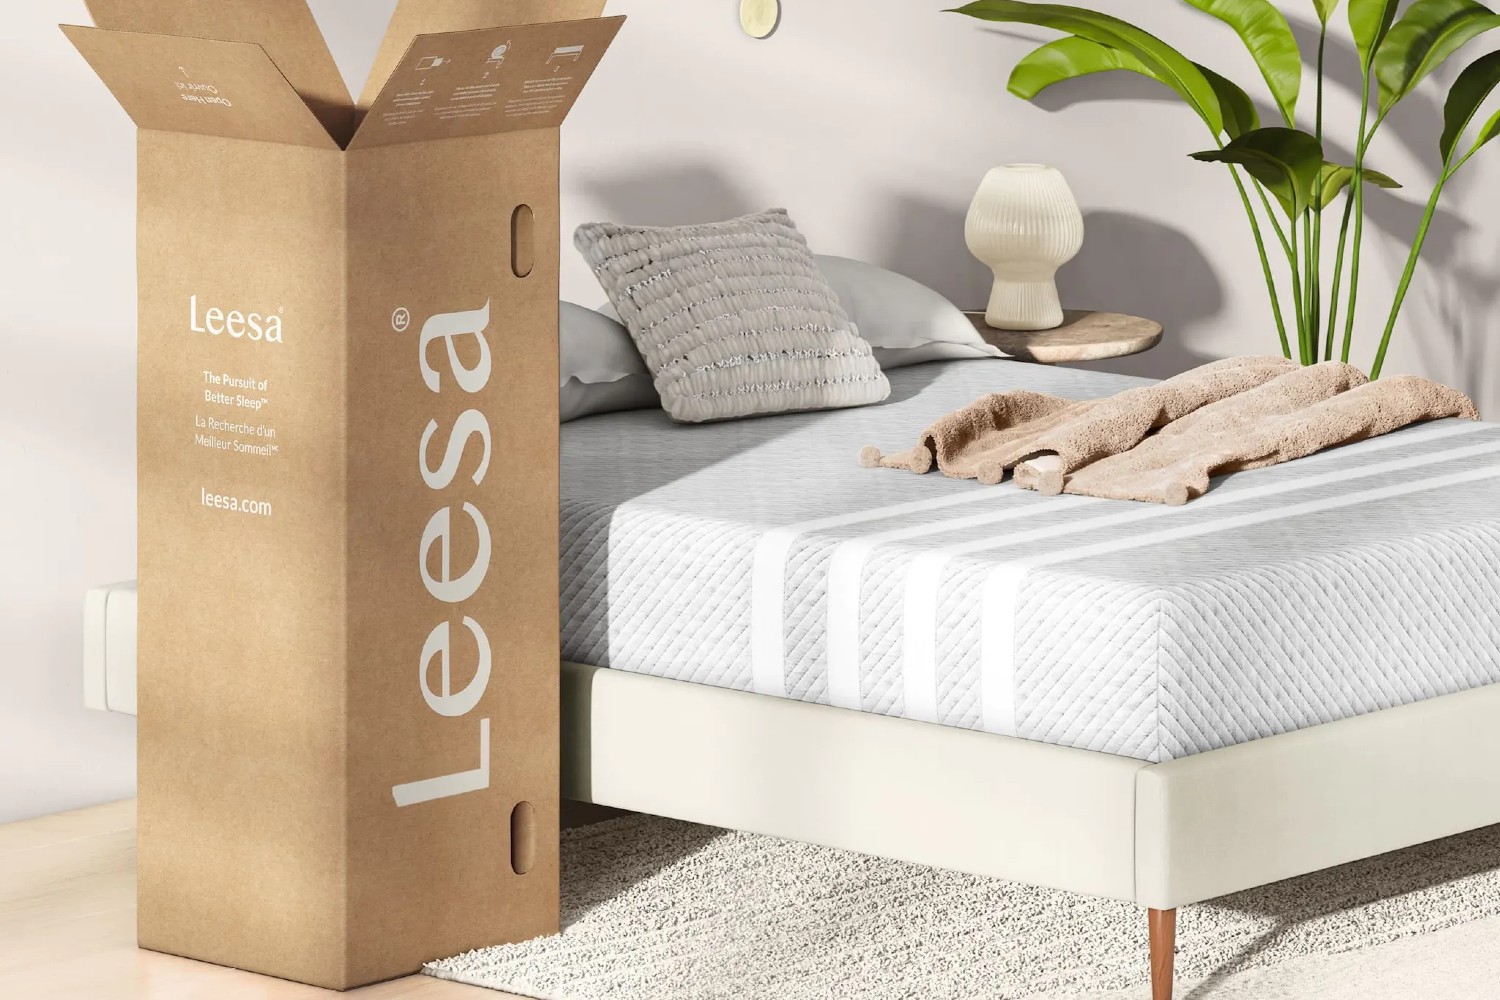 Leesa床垫盒和leesa床垫用于床上